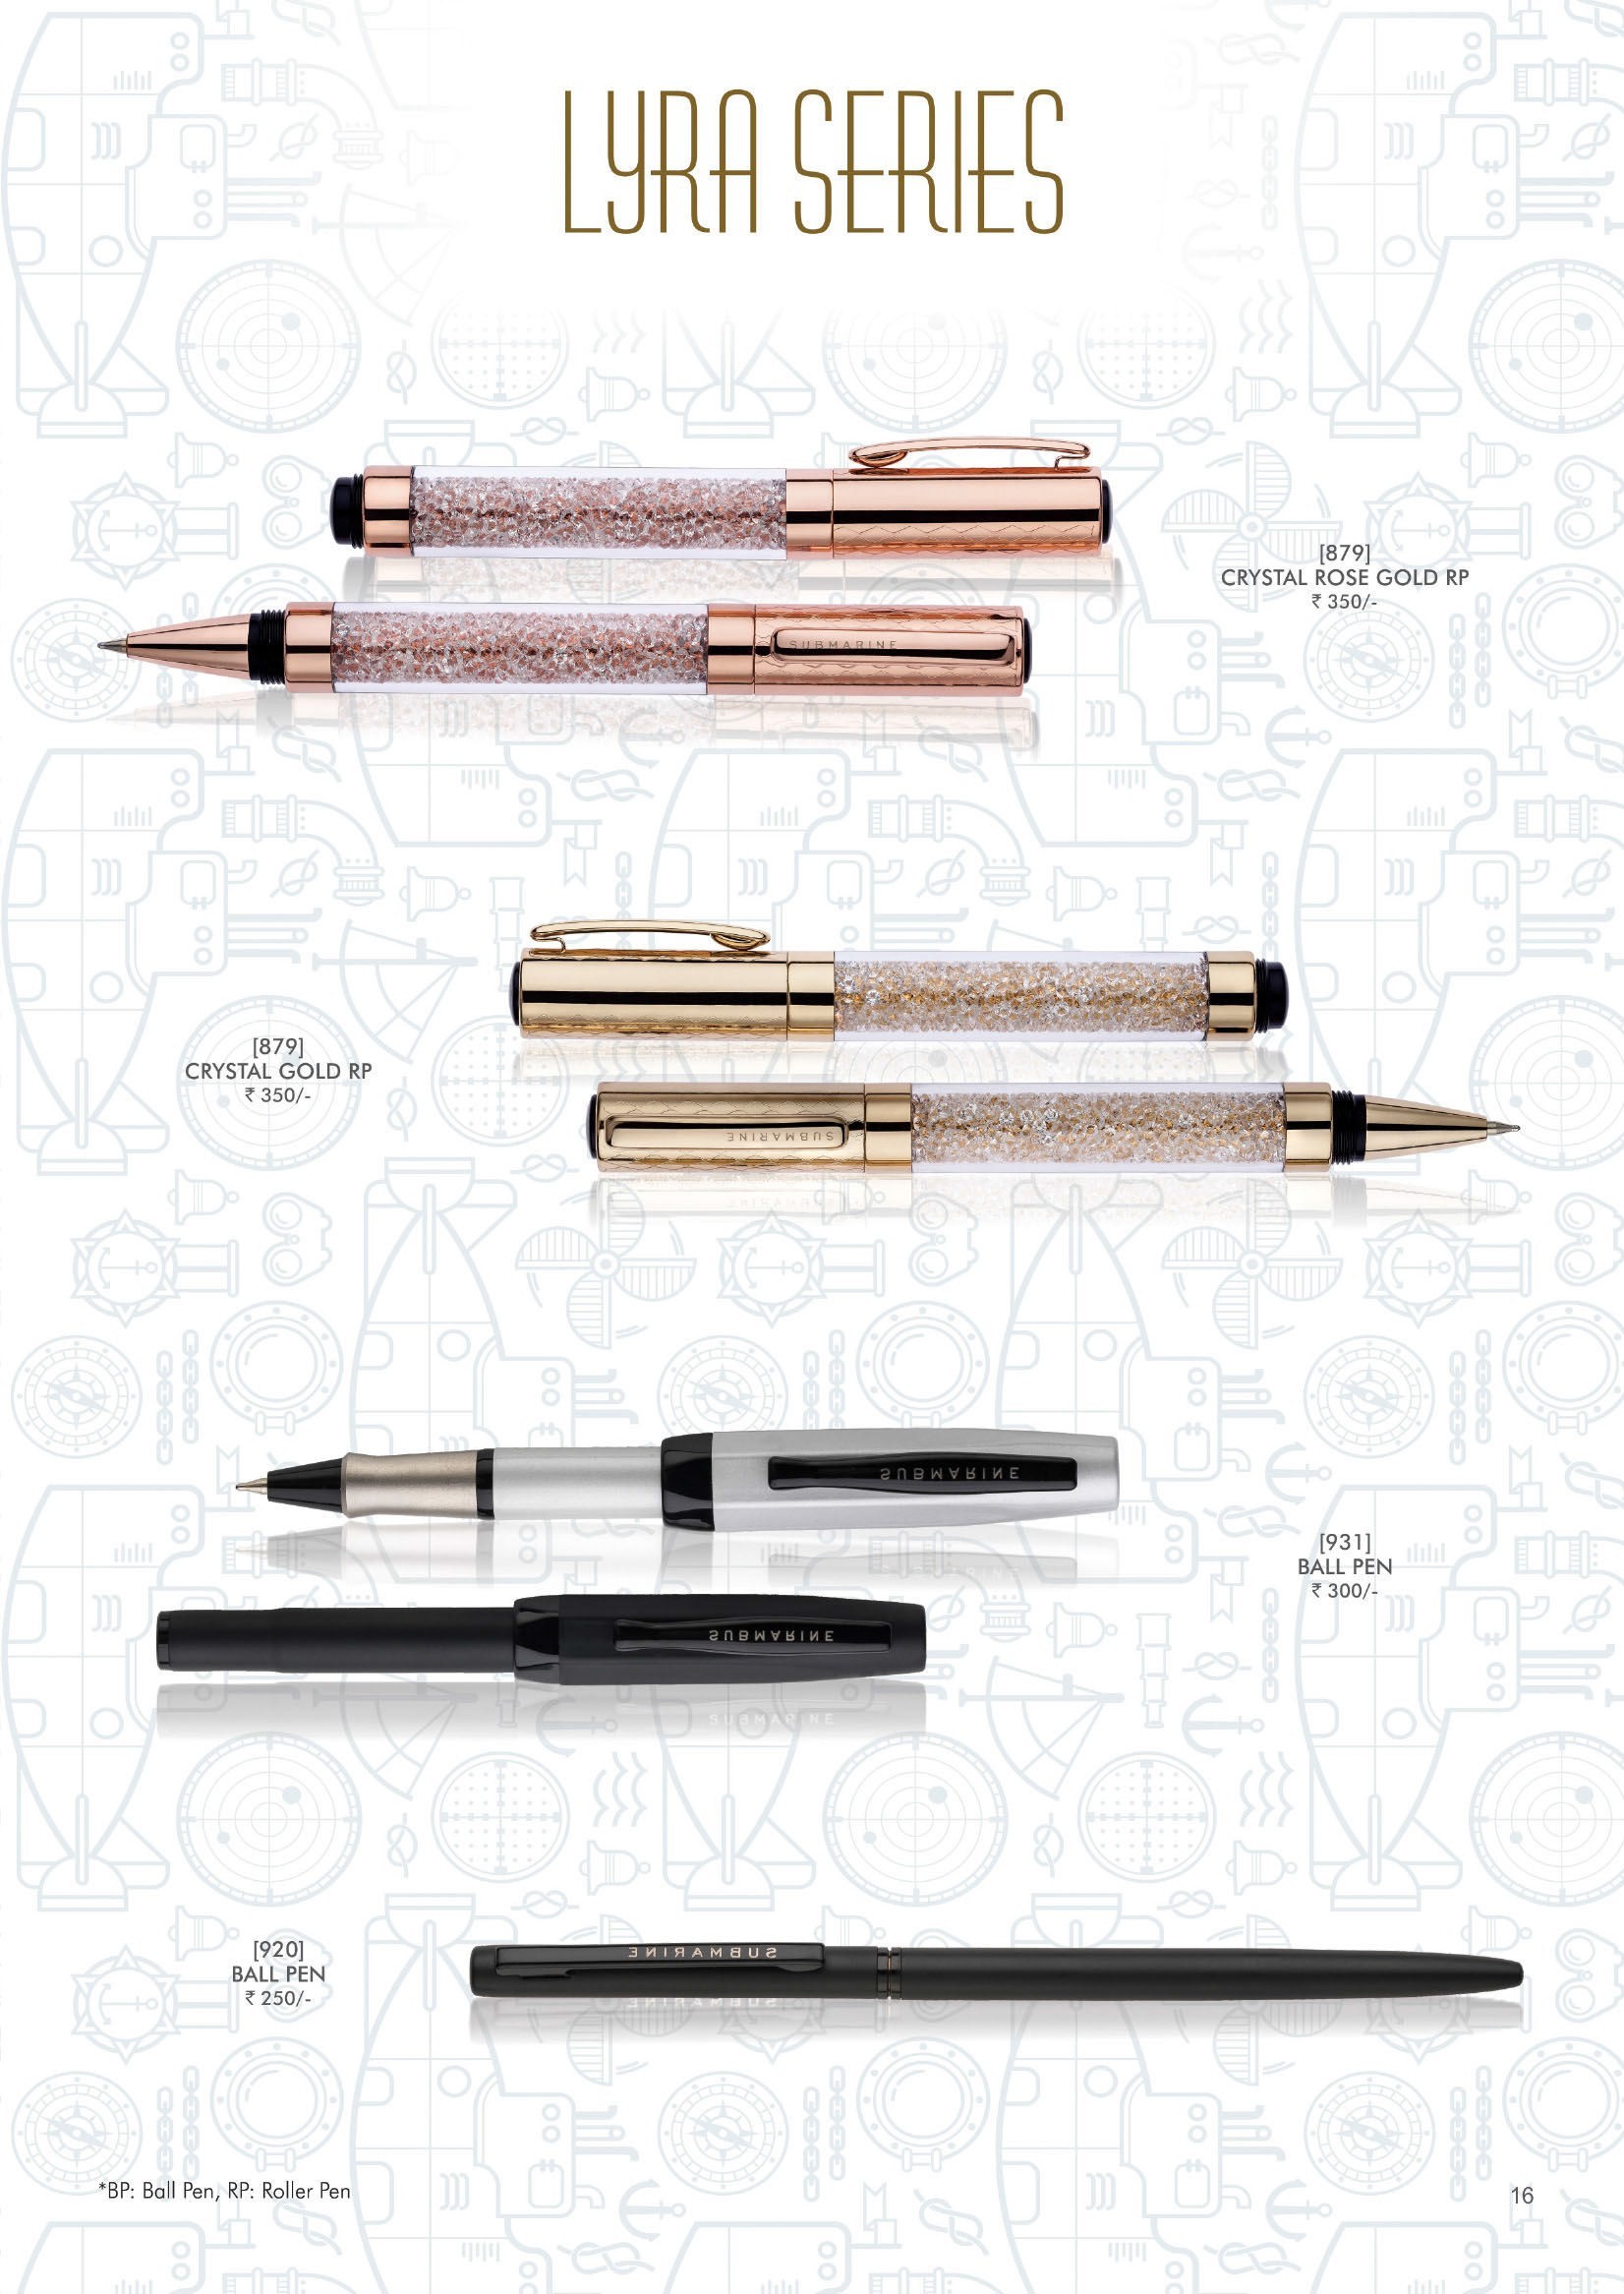 Submarine pens12